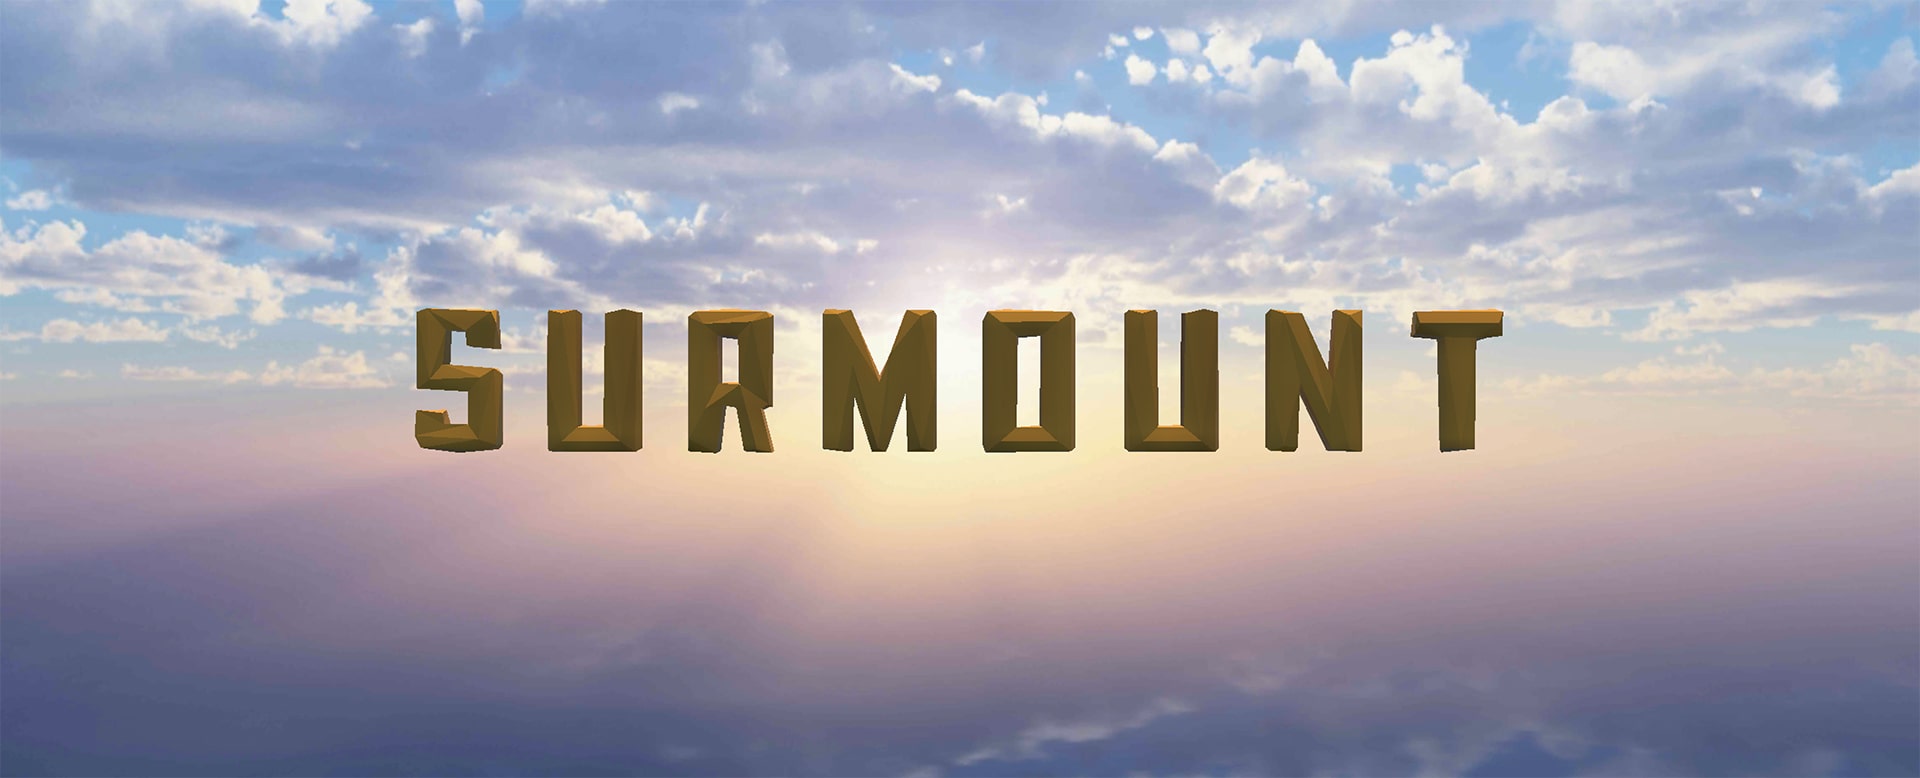 Surmount - Demo